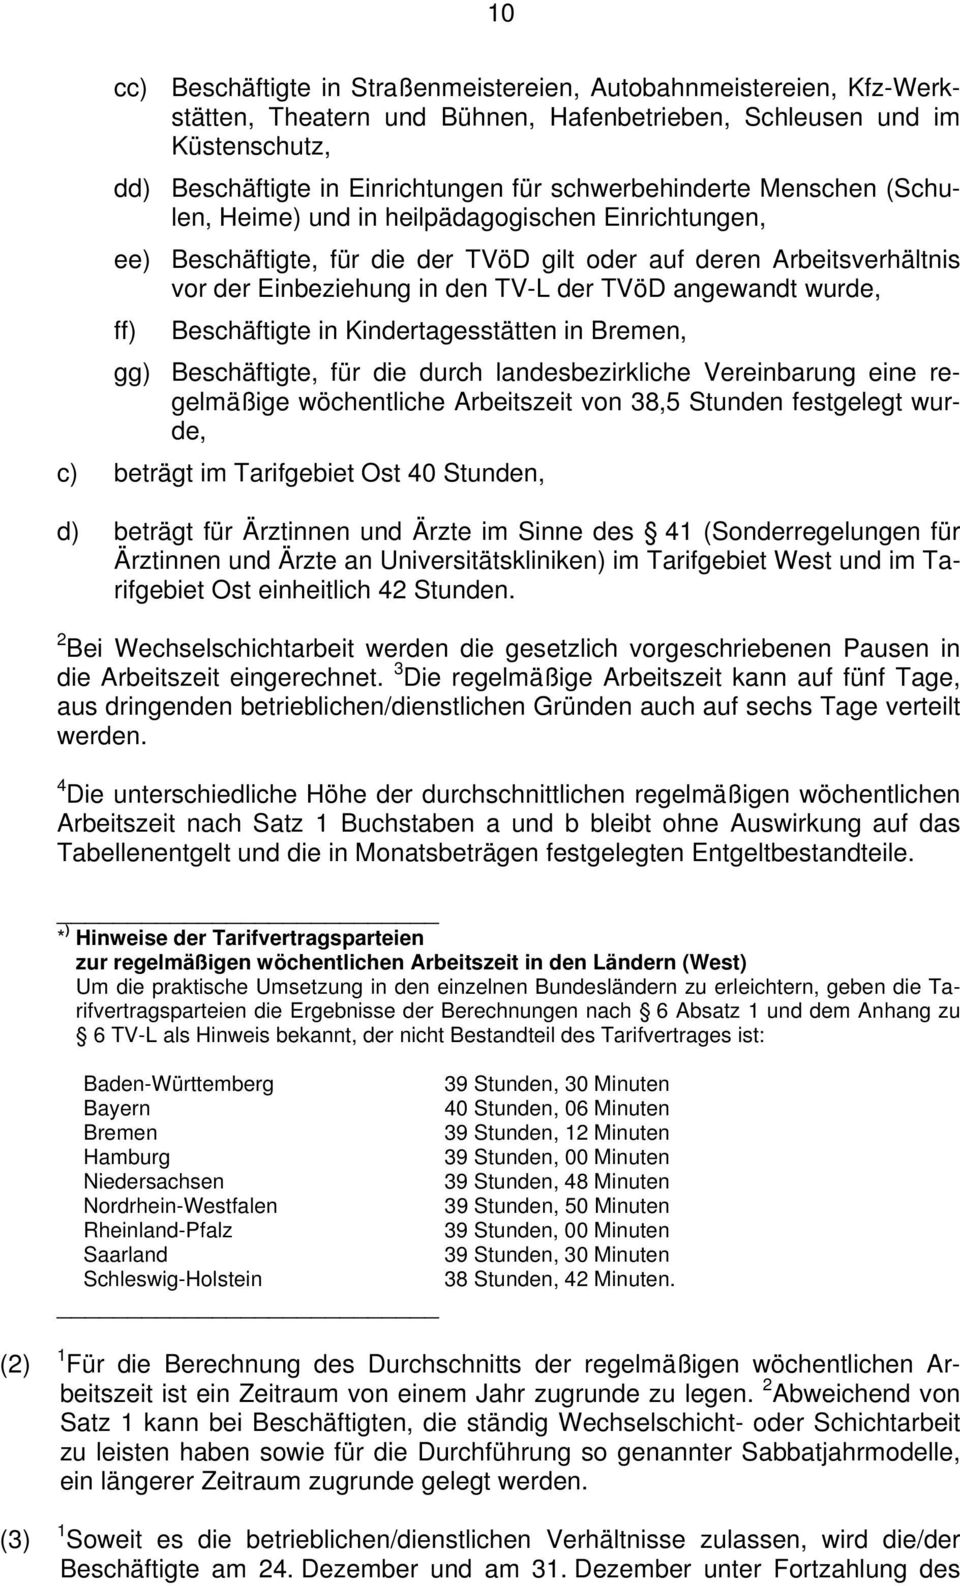 angewandt wurde, ff) Beschäftigte in Kindertagesstätten in Bremen, gg) Beschäftigte, für die durch landesbezirkliche Vereinbarung eine regelmäßige wöchentliche Arbeitszeit von 38,5 Stunden festgelegt